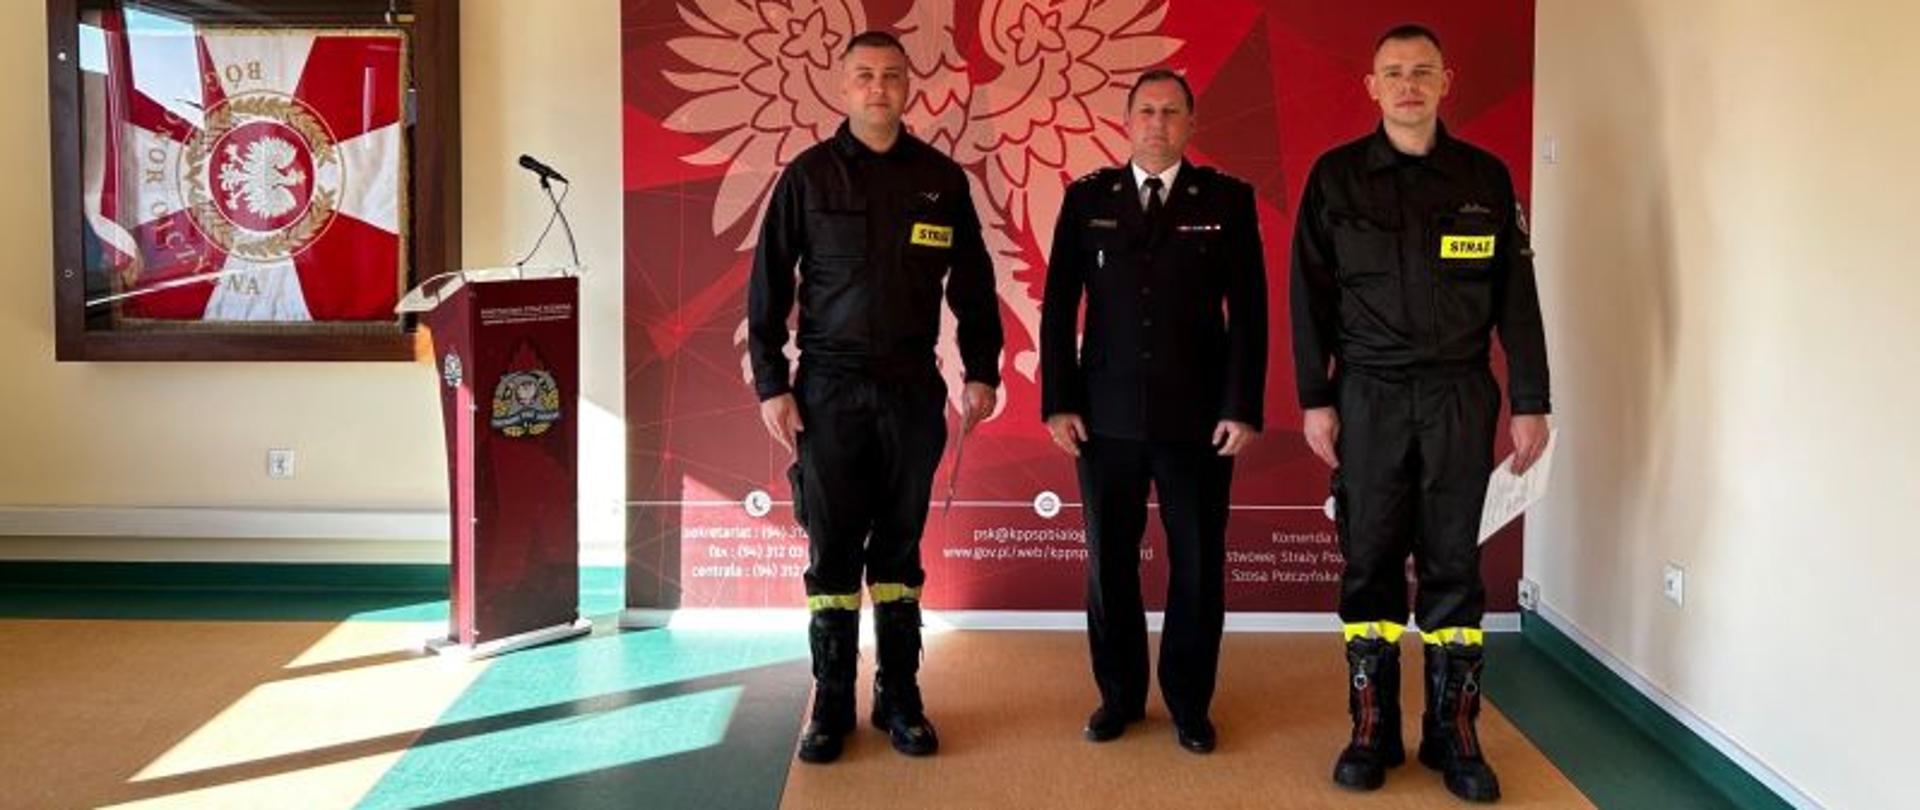 Przed ścianką informacyjną KP PSP Białogard stoi trzech strażaków. Dwaj w ubraniach koszarowych, jeden w ubraniu wyjściowym. Ścianka z godłem Polski w kolorze czerwonym.